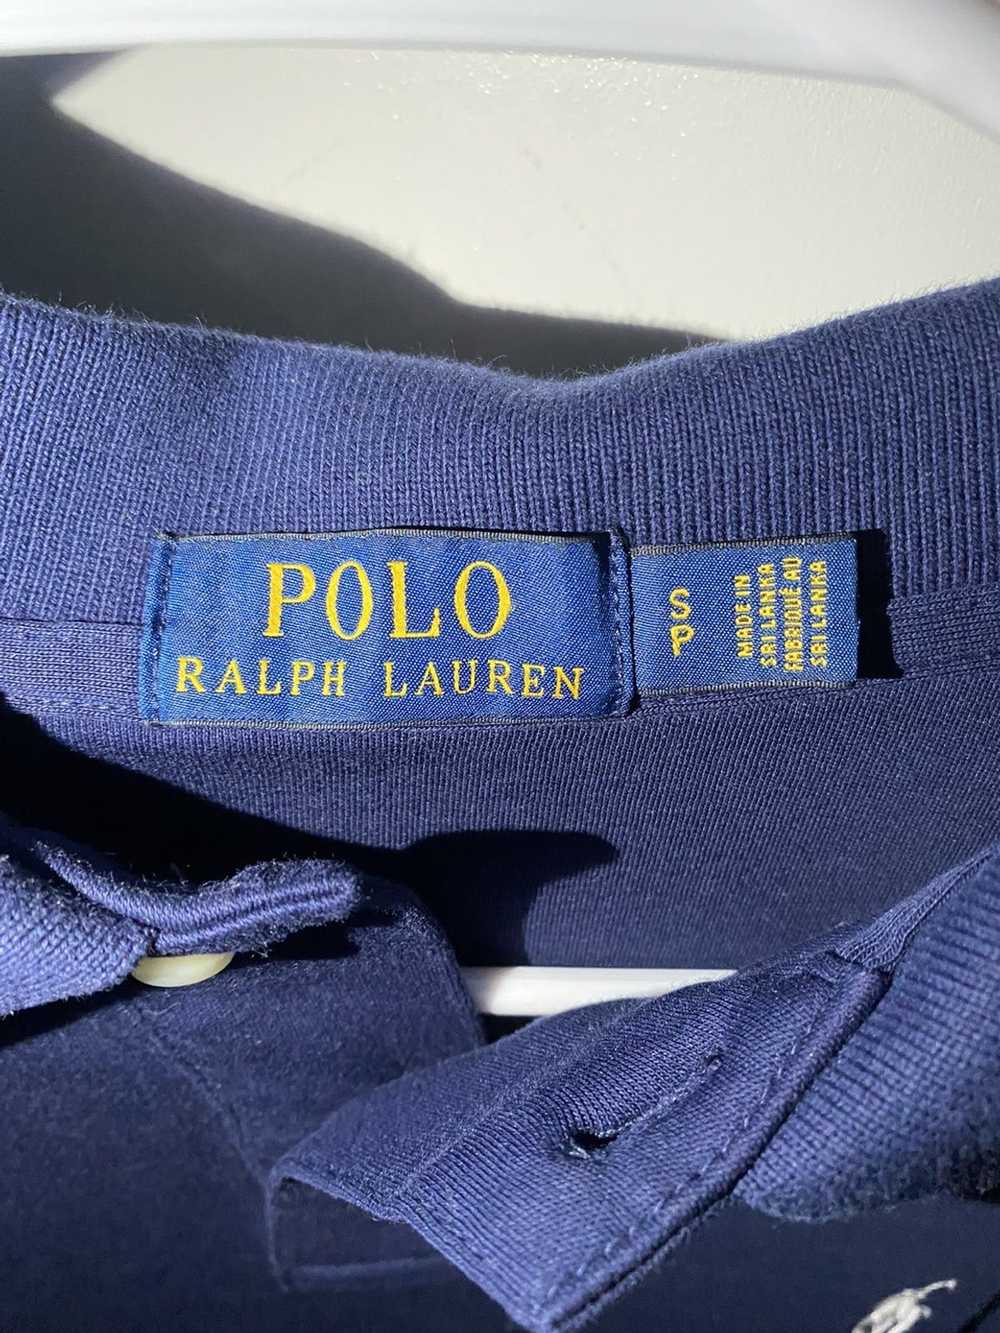 Polo Ralph Lauren Polo Ralph Lauren Polo - image 2